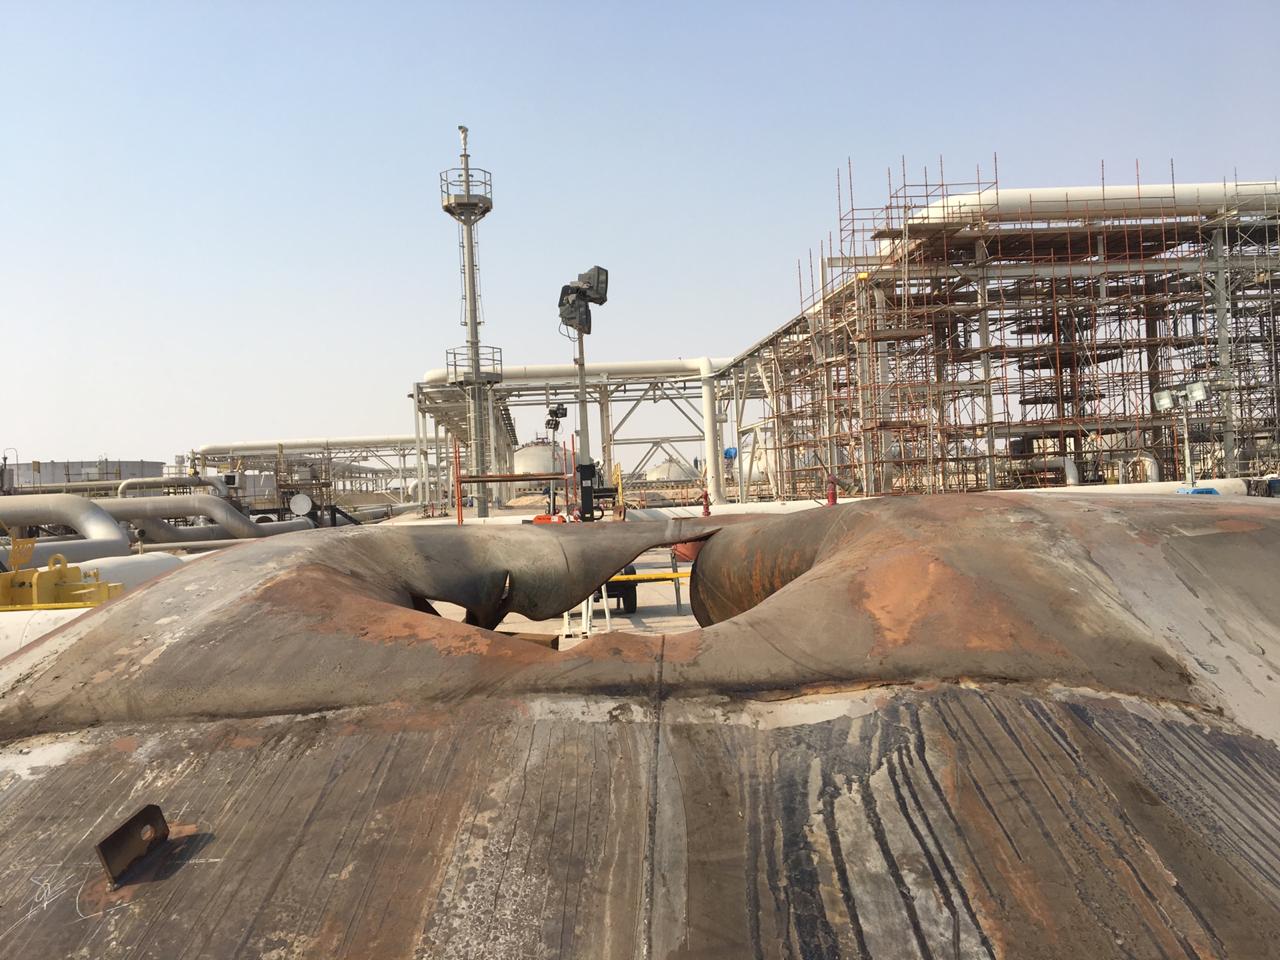 Пострадавший объект в Абкайке. Здесь, по утверждению Saudi Aramco, находится крупнейший в мире завод по первичной переработке нефти
&nbsp;